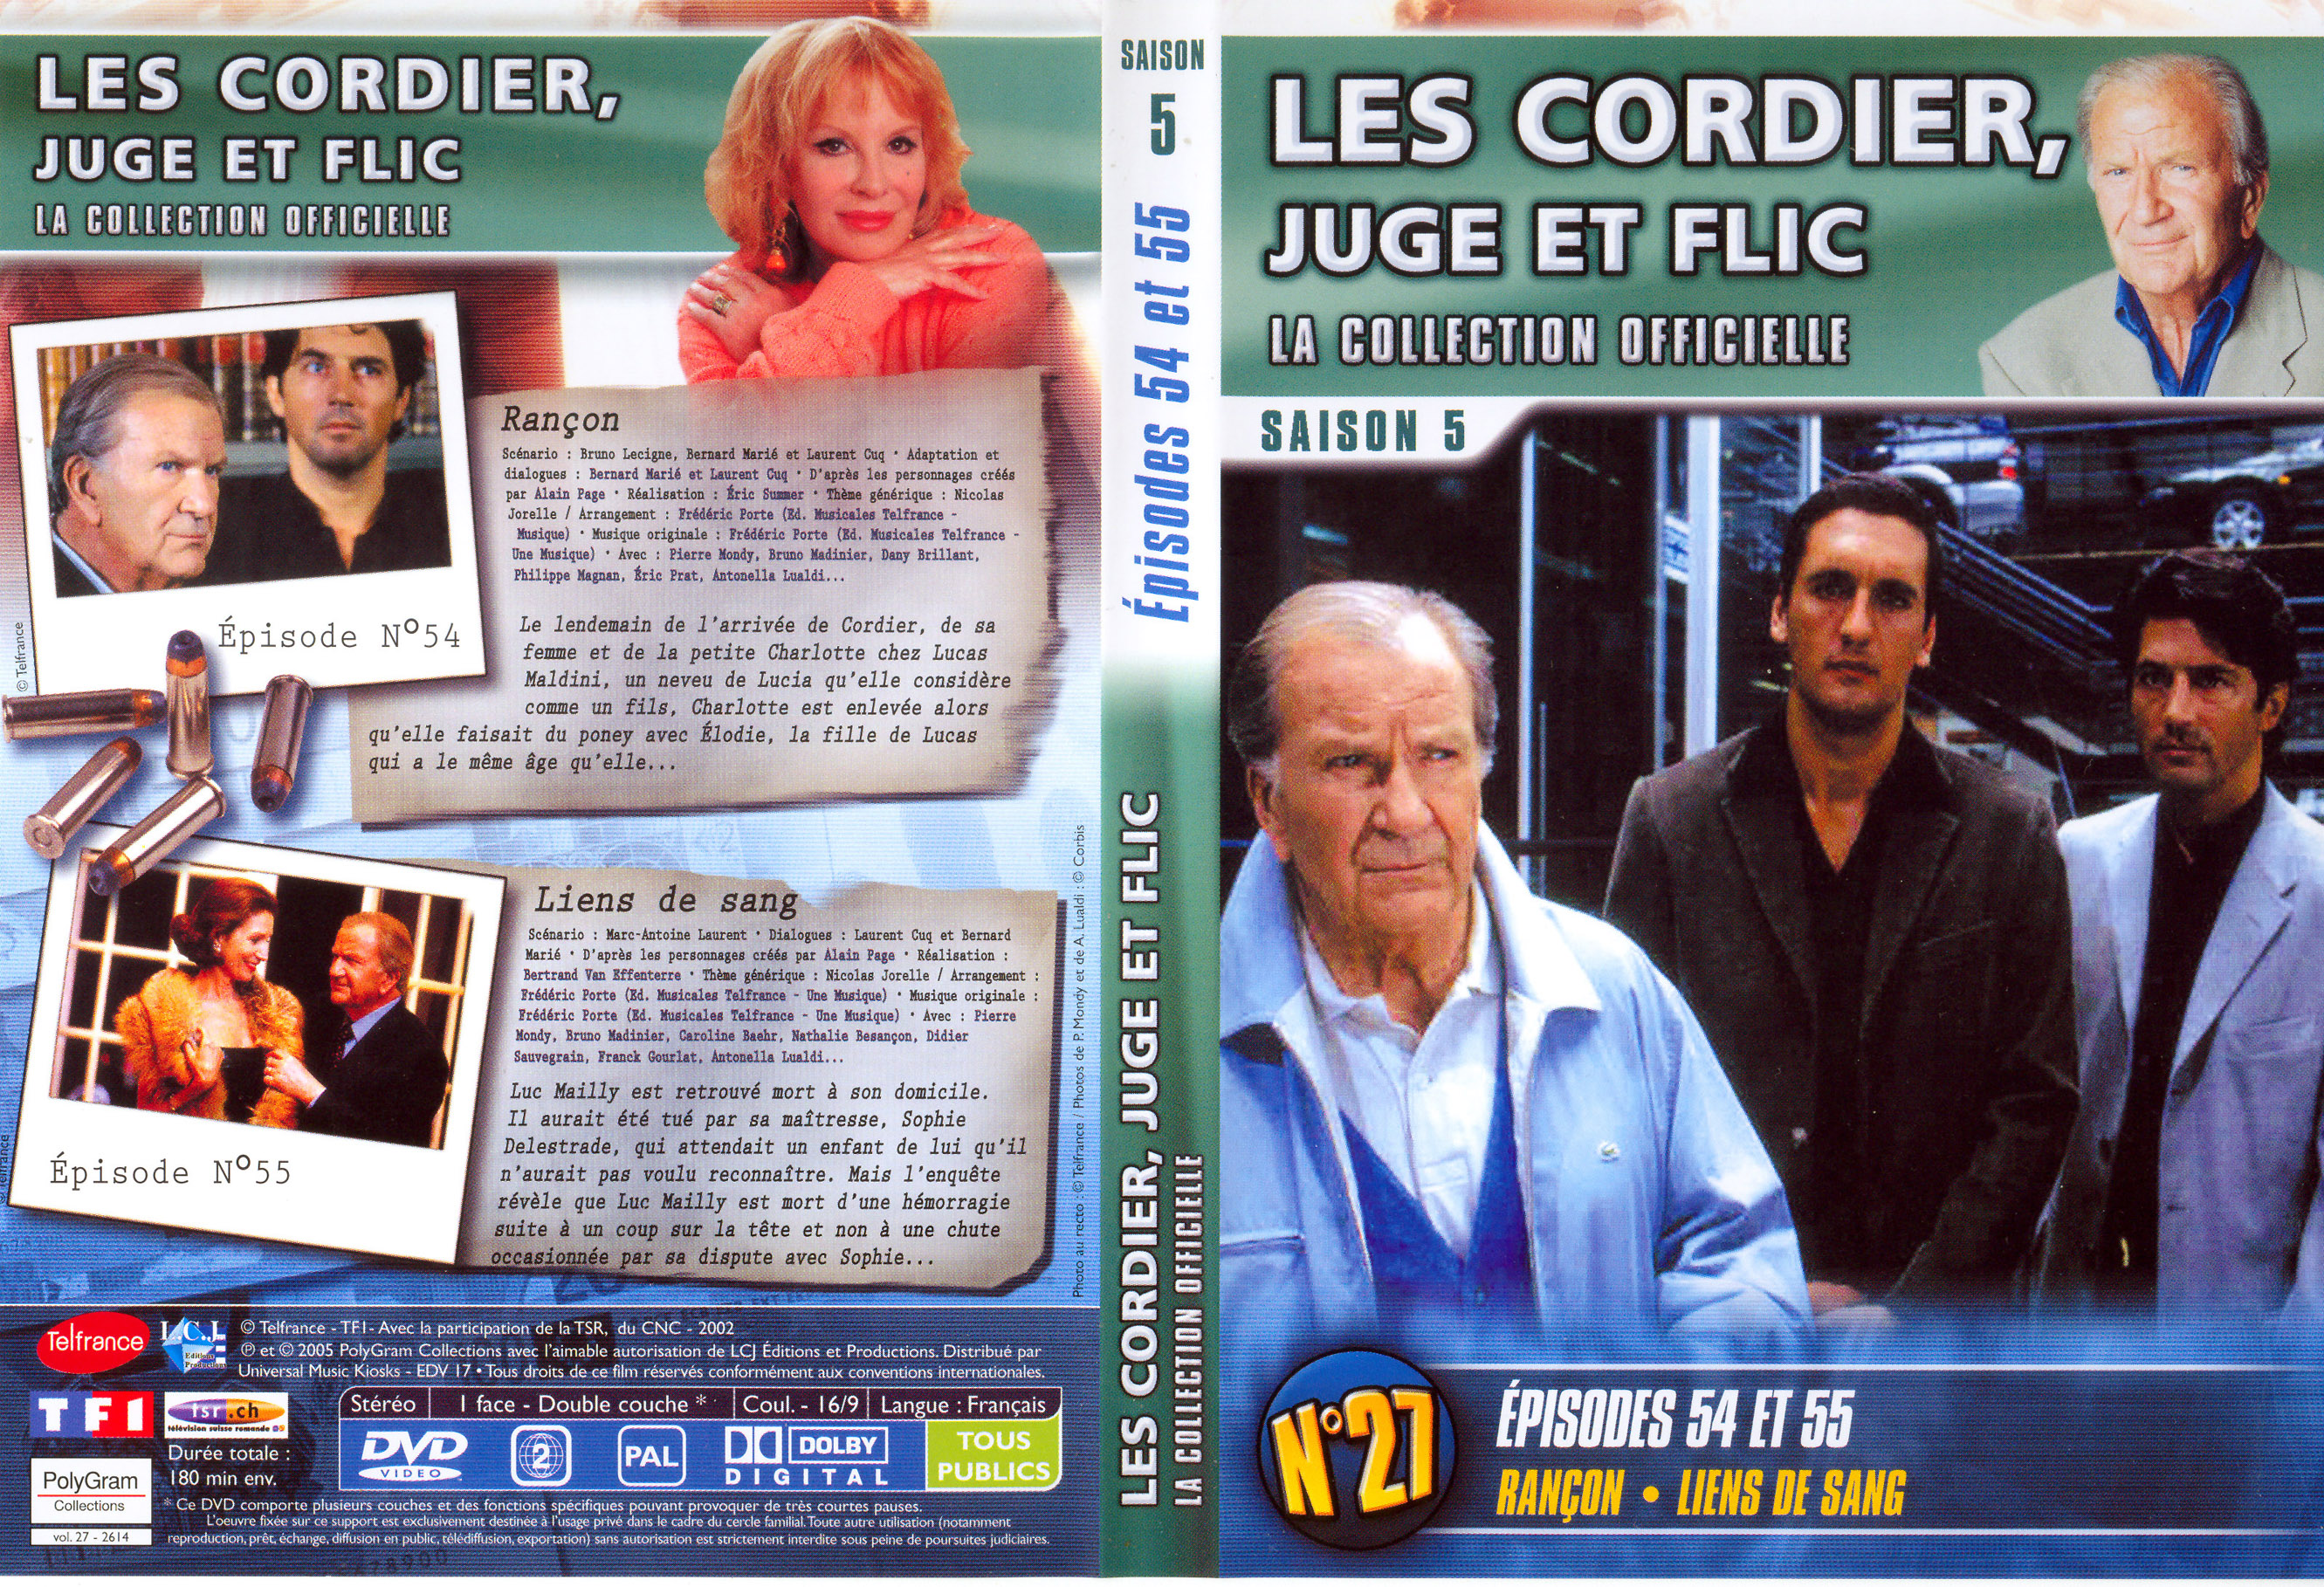 Jaquette DVD Les cordier juge et flic Saison 5 vol 27